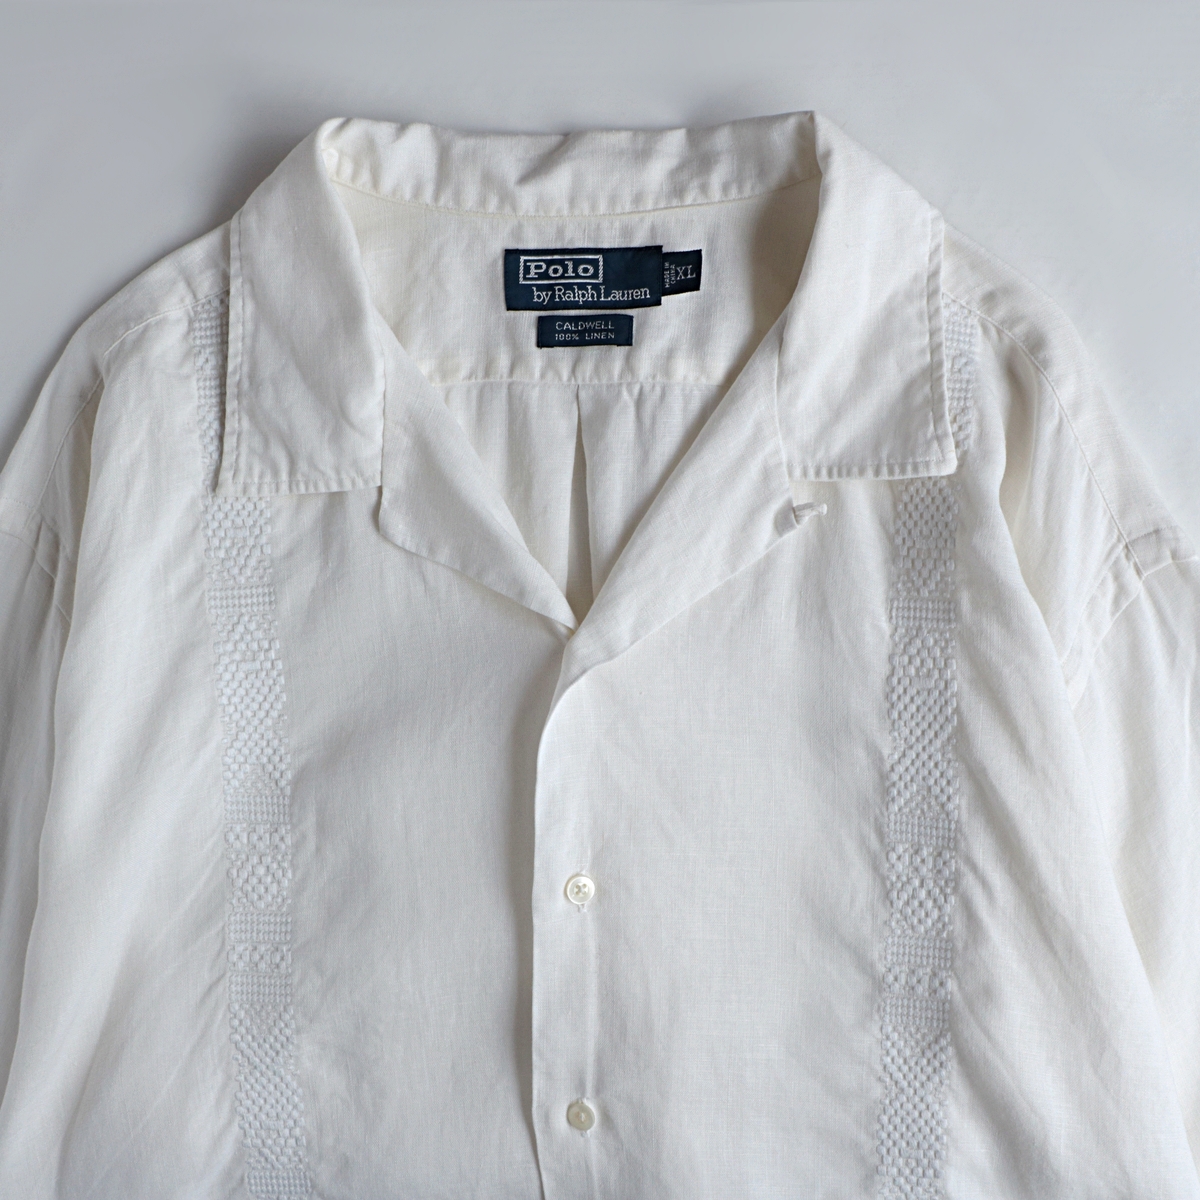 のない 90s’ Ralph Lauren shirt ラルフローレン シャツ a18rX-m37945075274 ございます